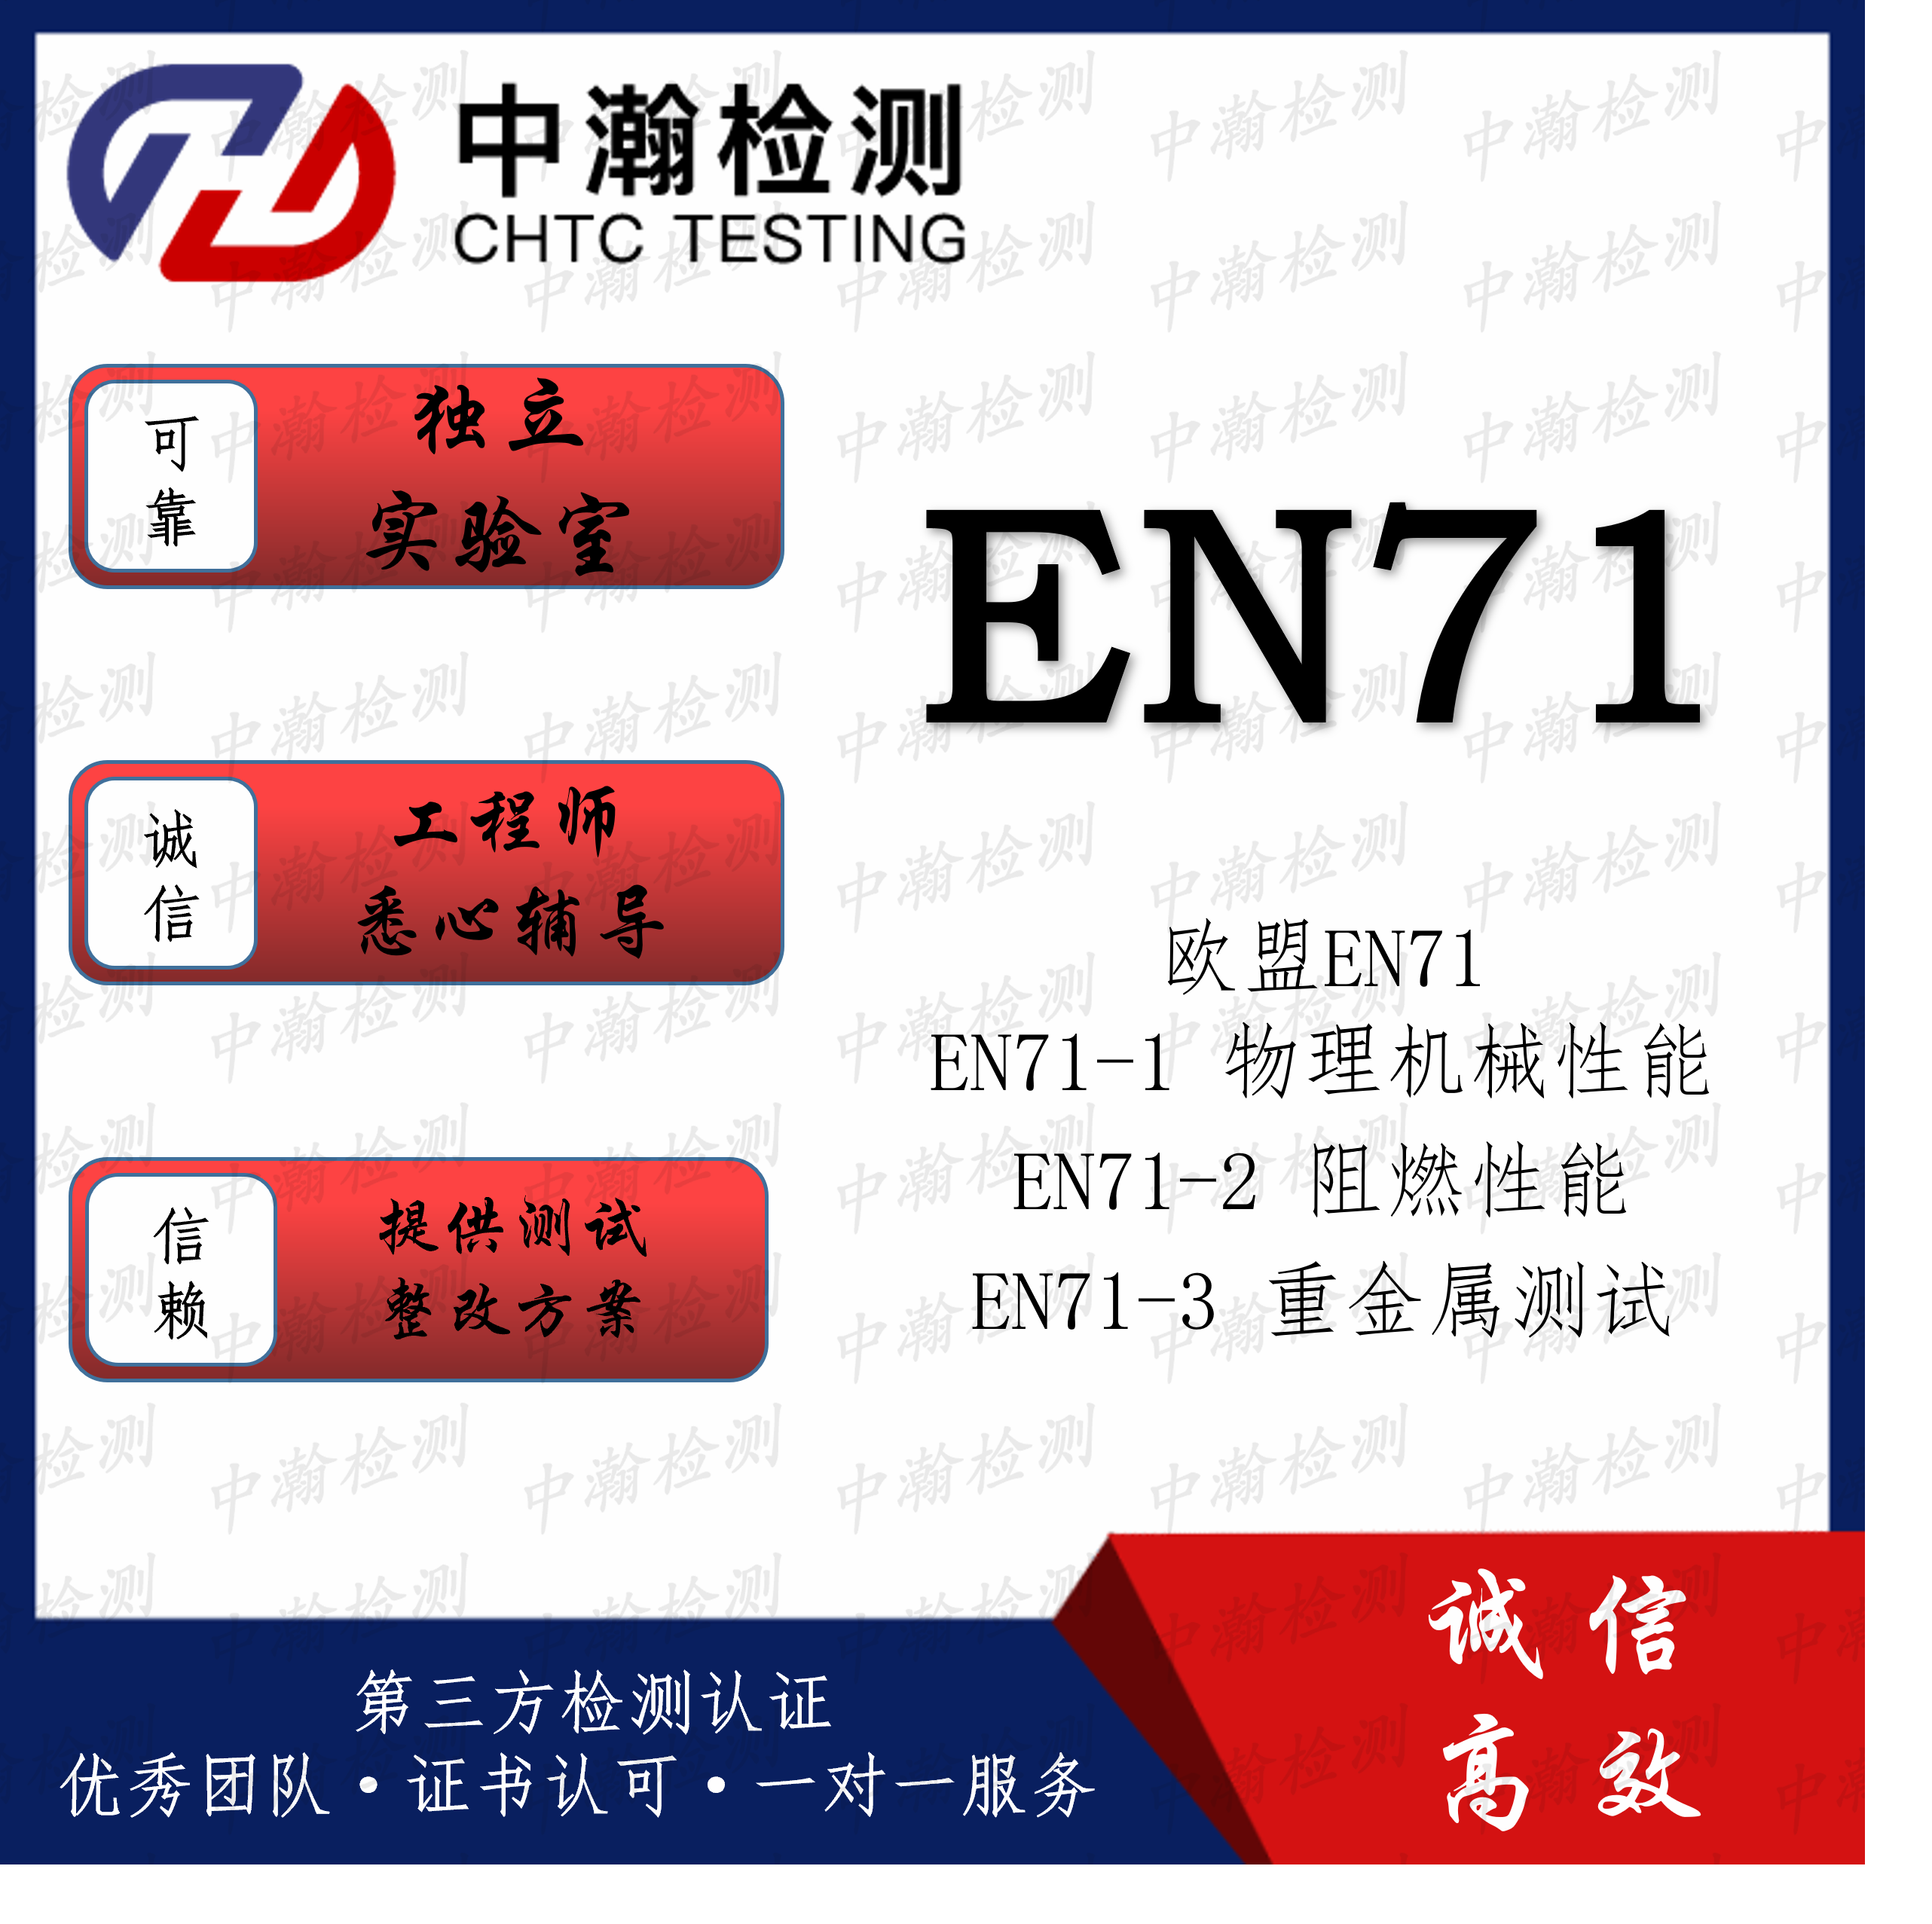 一般EN71认证时间及流程 专注EN71测试